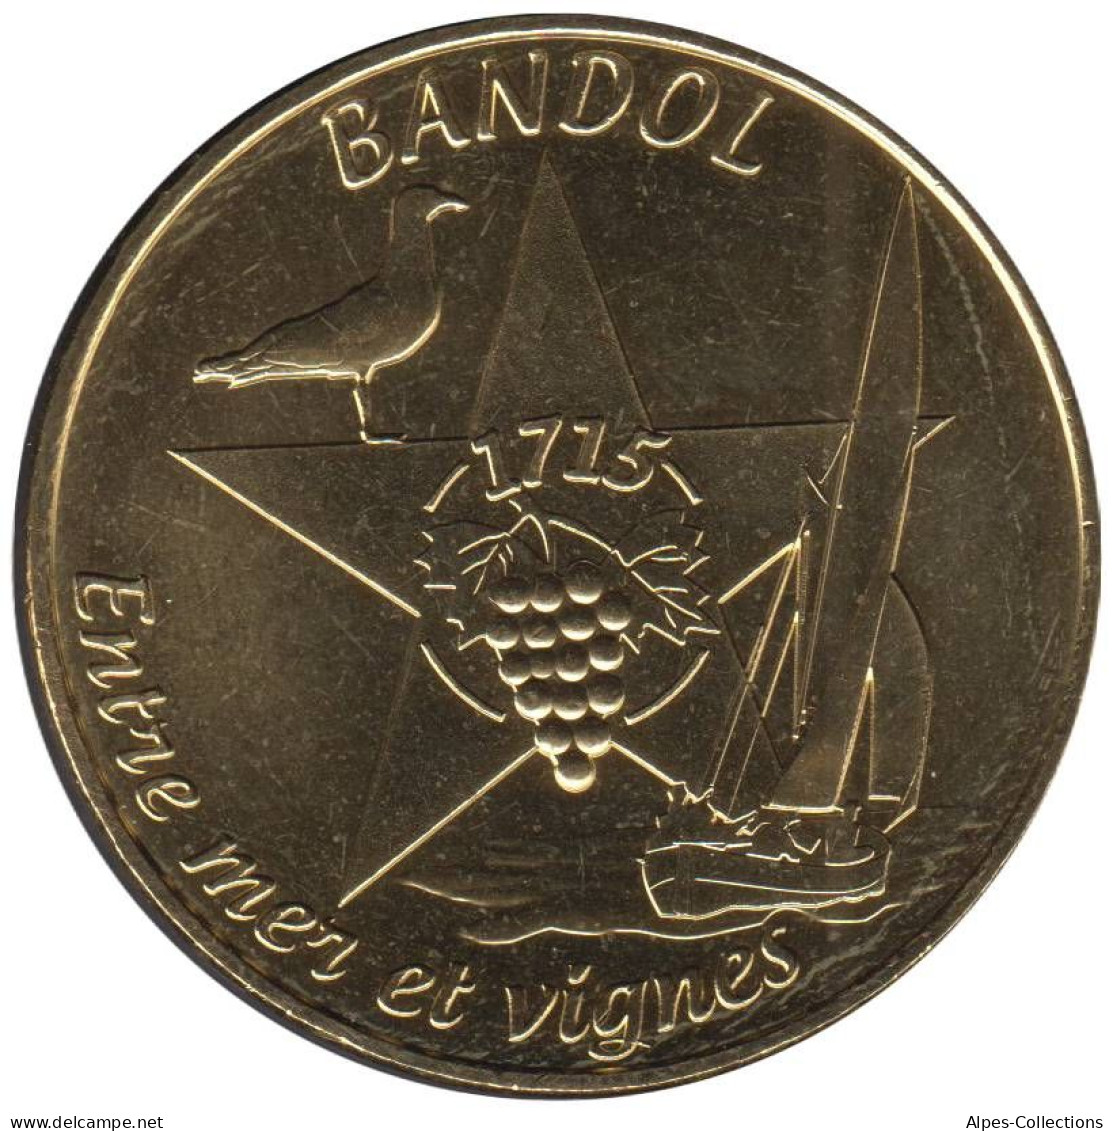 13-2077 - JETON TOURISTIQUE MDP - Aubagne - Tricentenaire Ville Bandol - 2015.2 - 2015